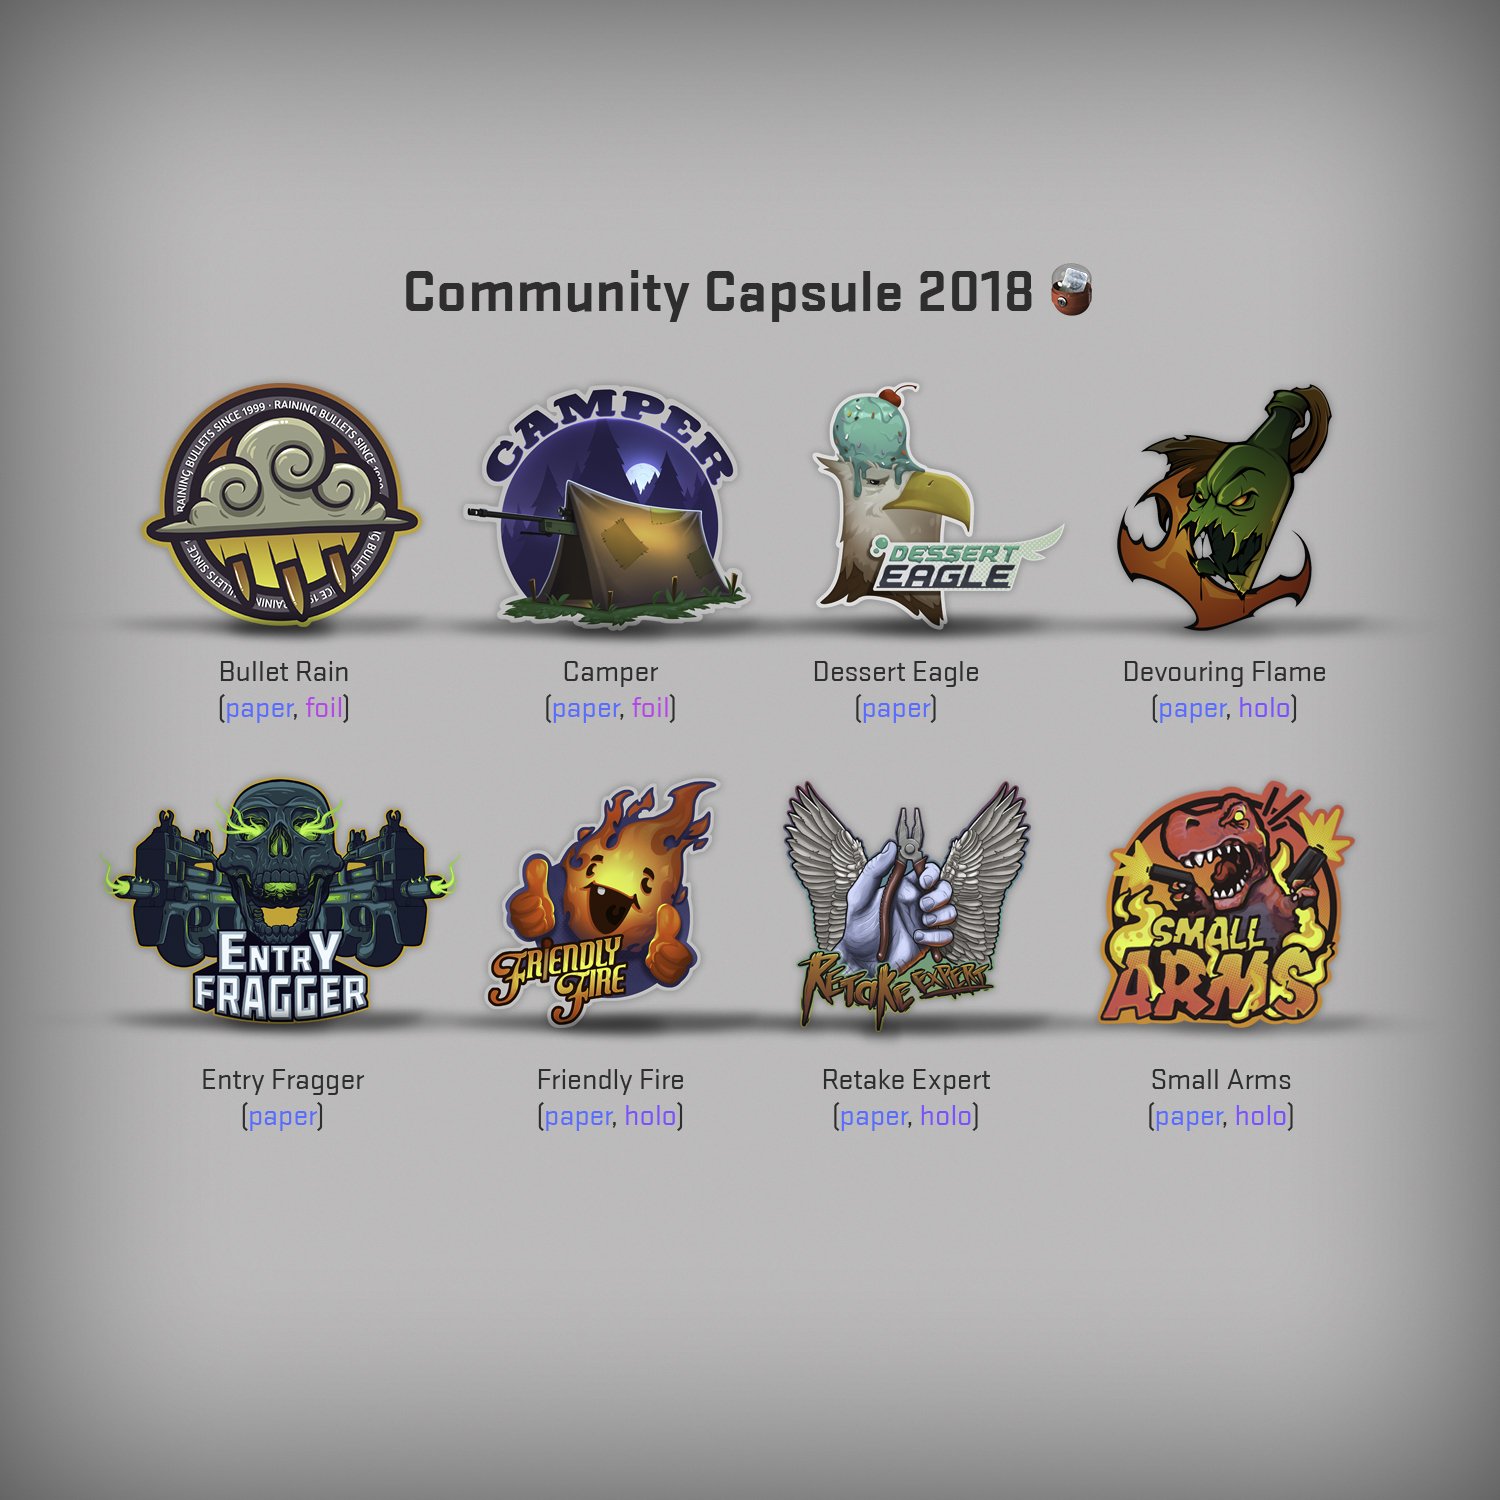 Community Capsule 2018